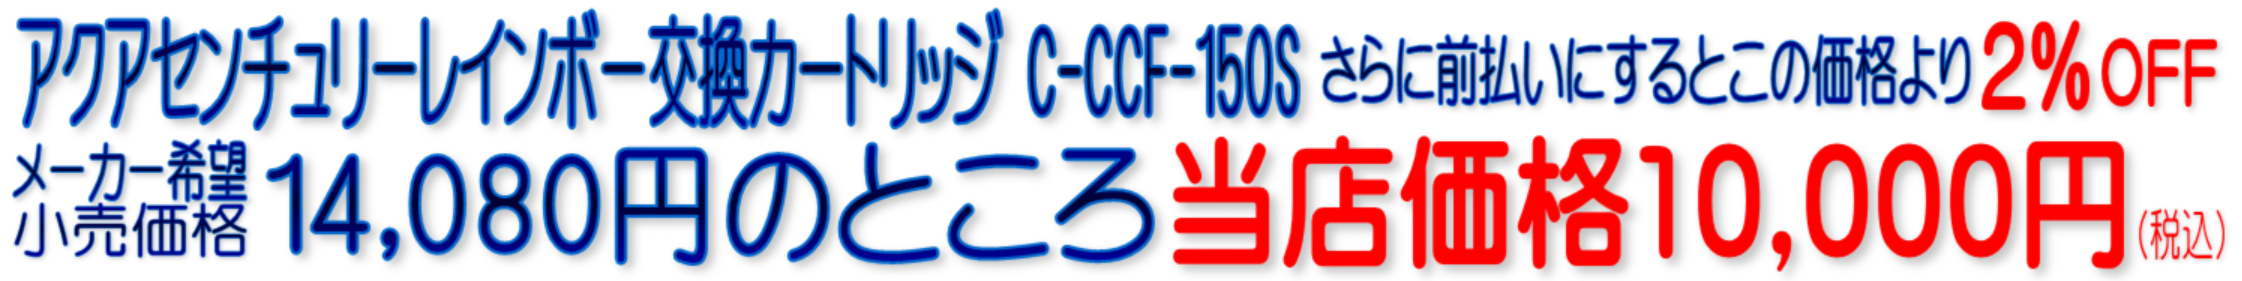 C-CCF-150S